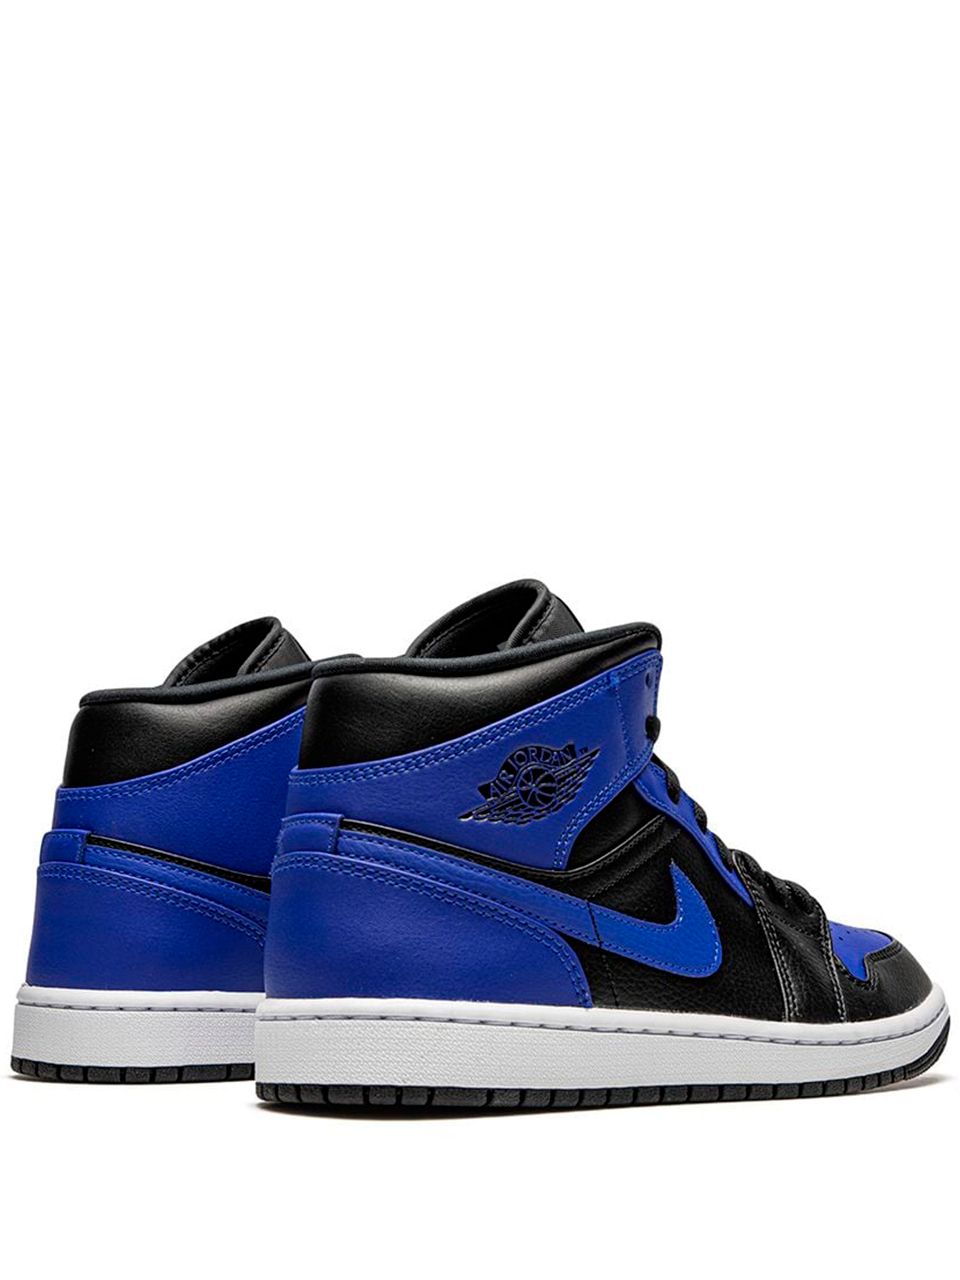 Imagem de: Tênis Nike Air Jordan 1 Mid Azul